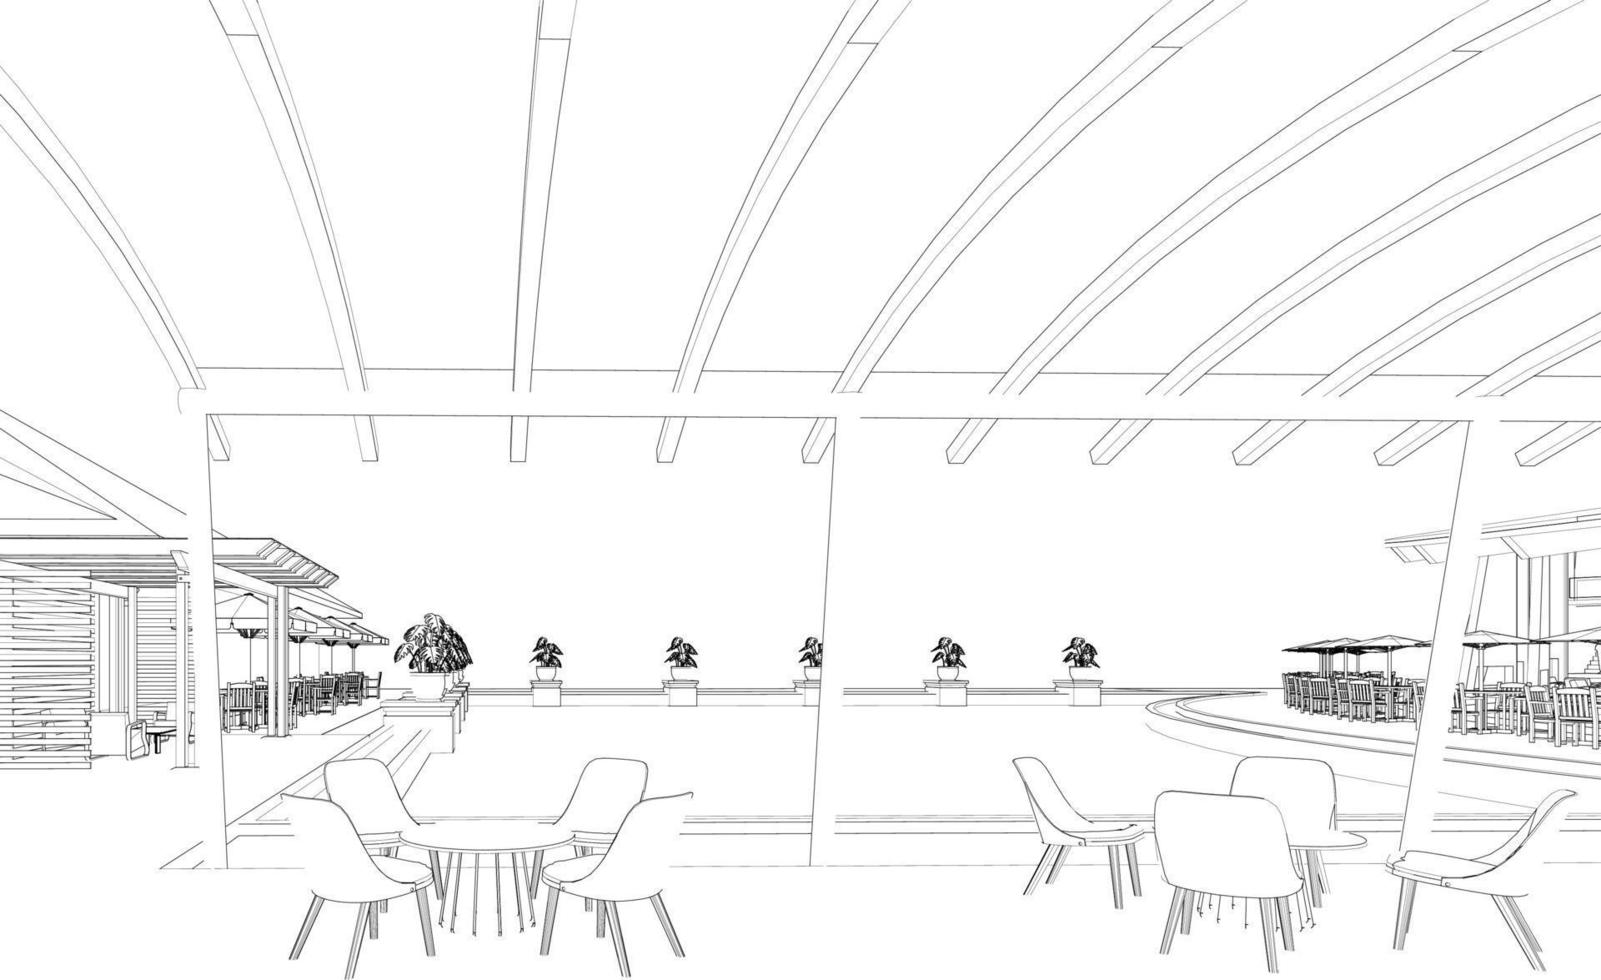 3d illustratie van koffie winkel vector